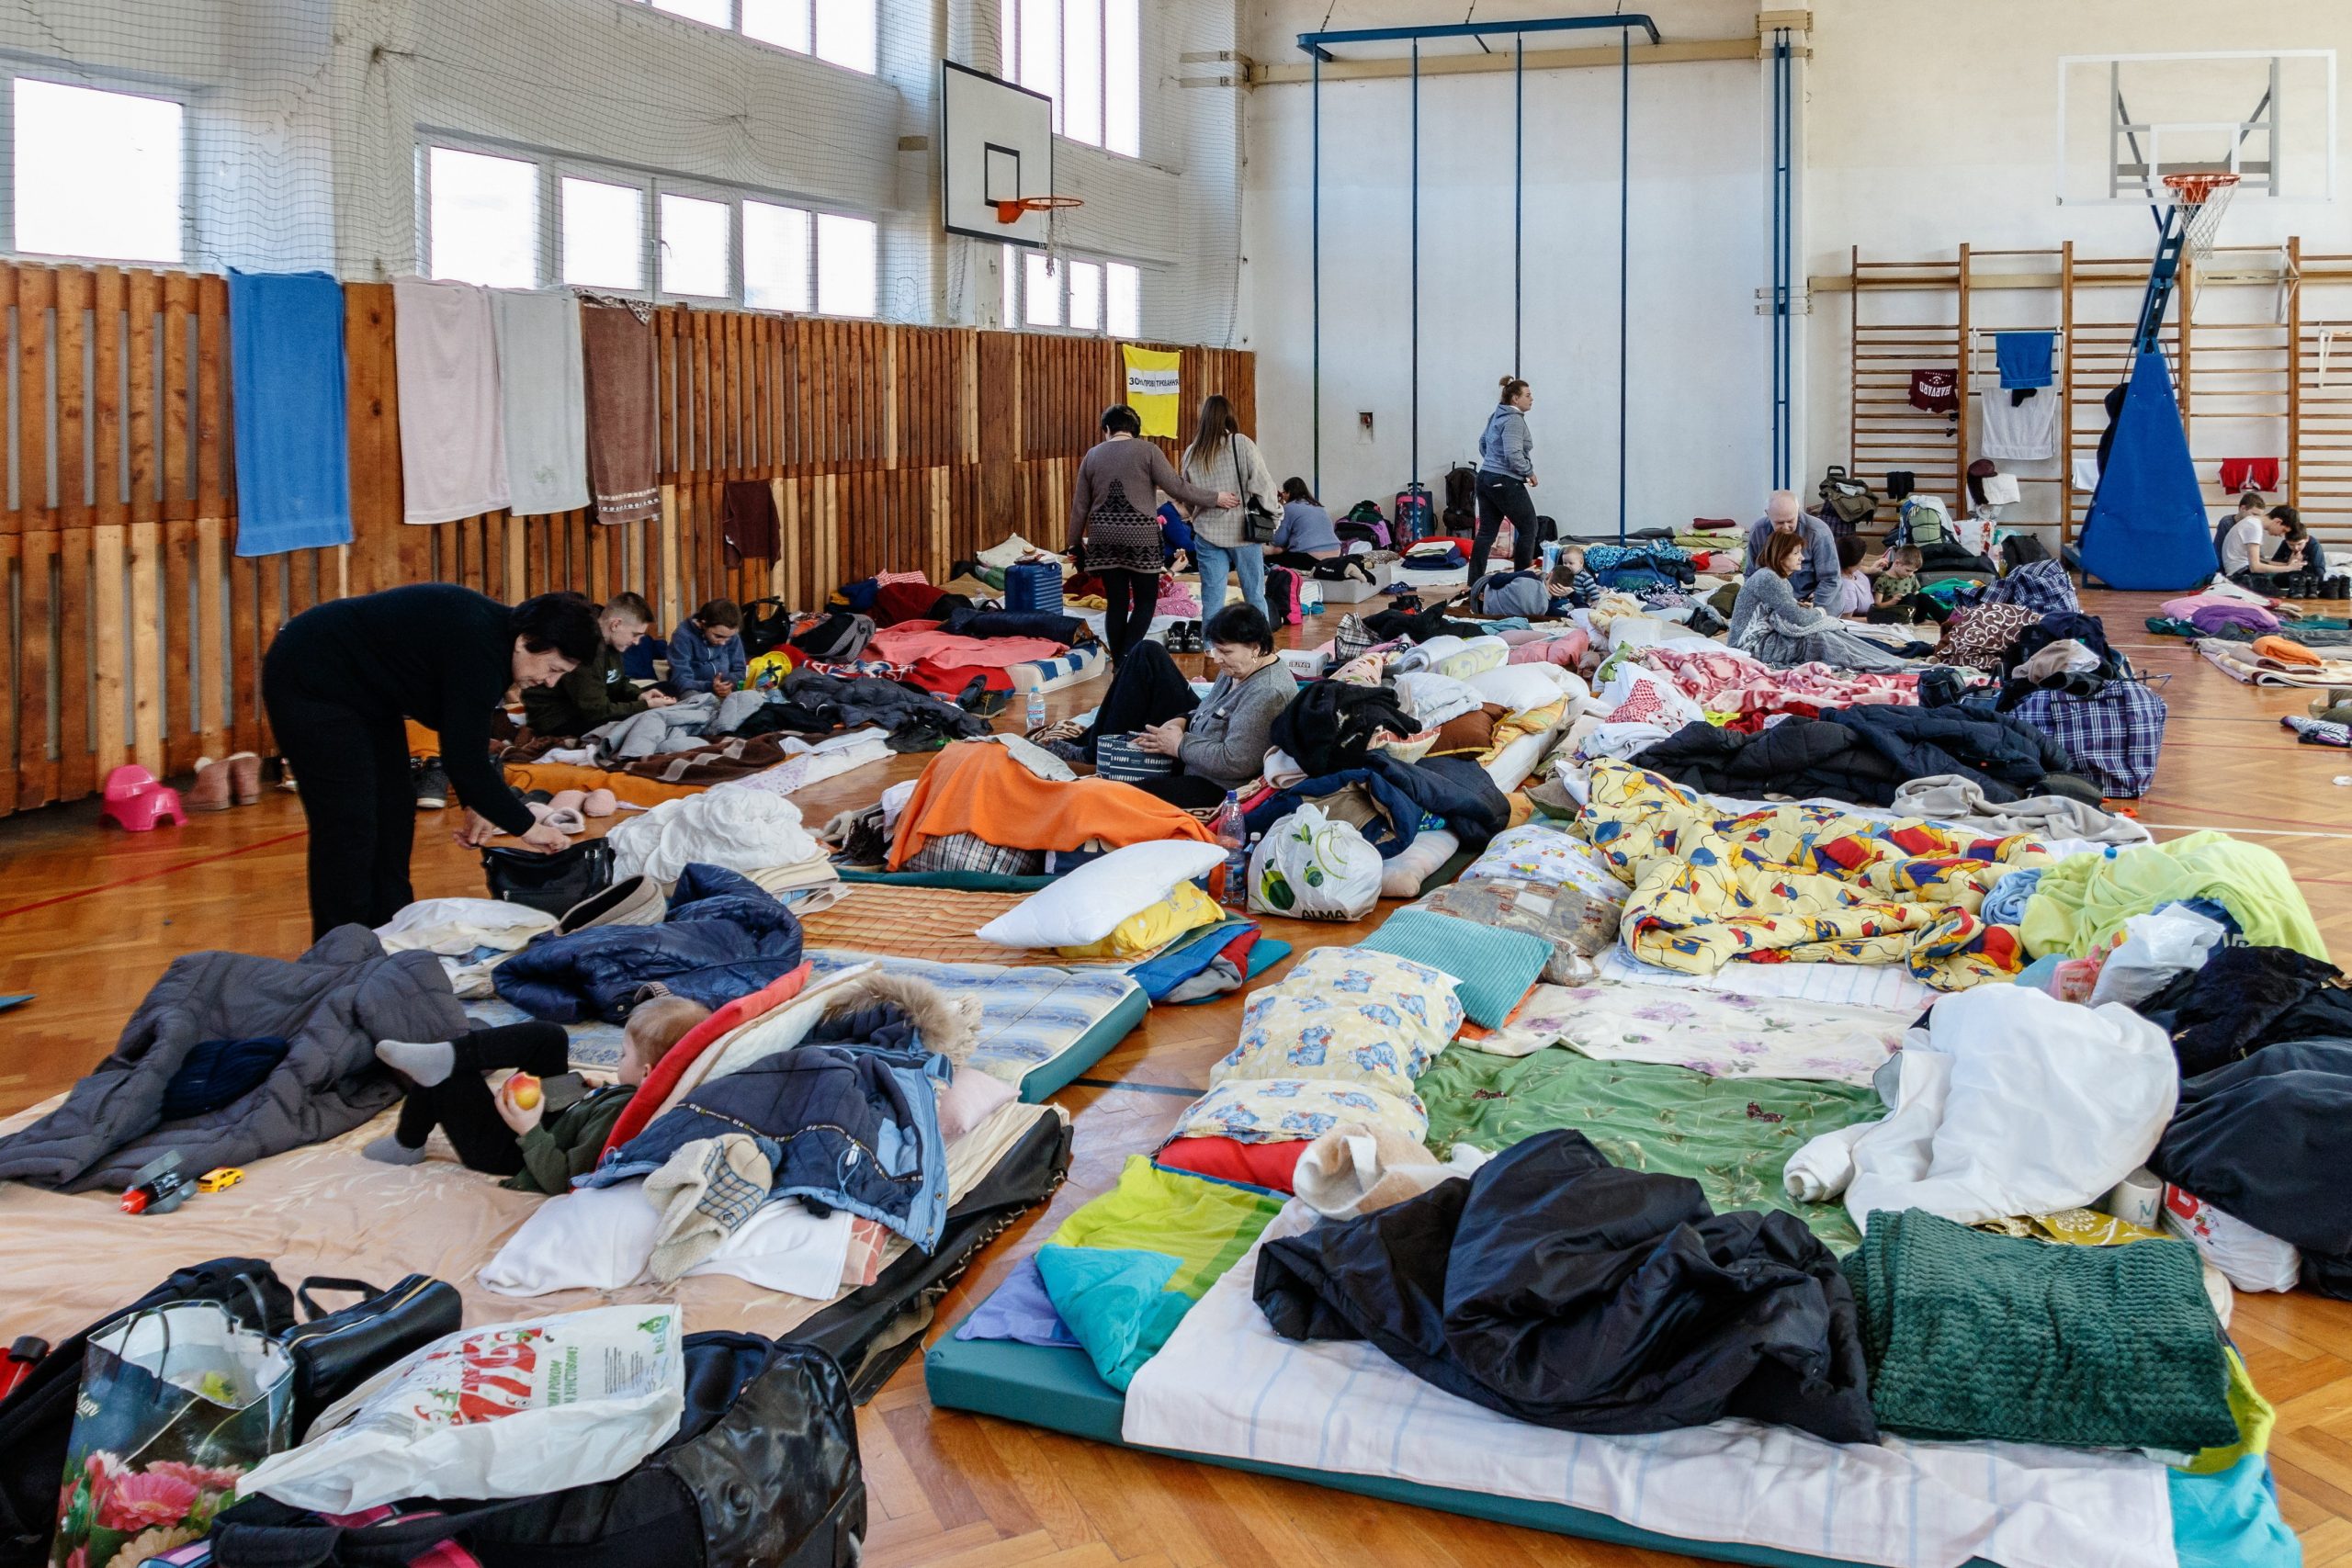 Εννέα χώρες της ΕΕ ζητούν οικονομική βοήθεια από την ΕΕ για τους Ουκρανούς πρόσφυγες - Hungary Today